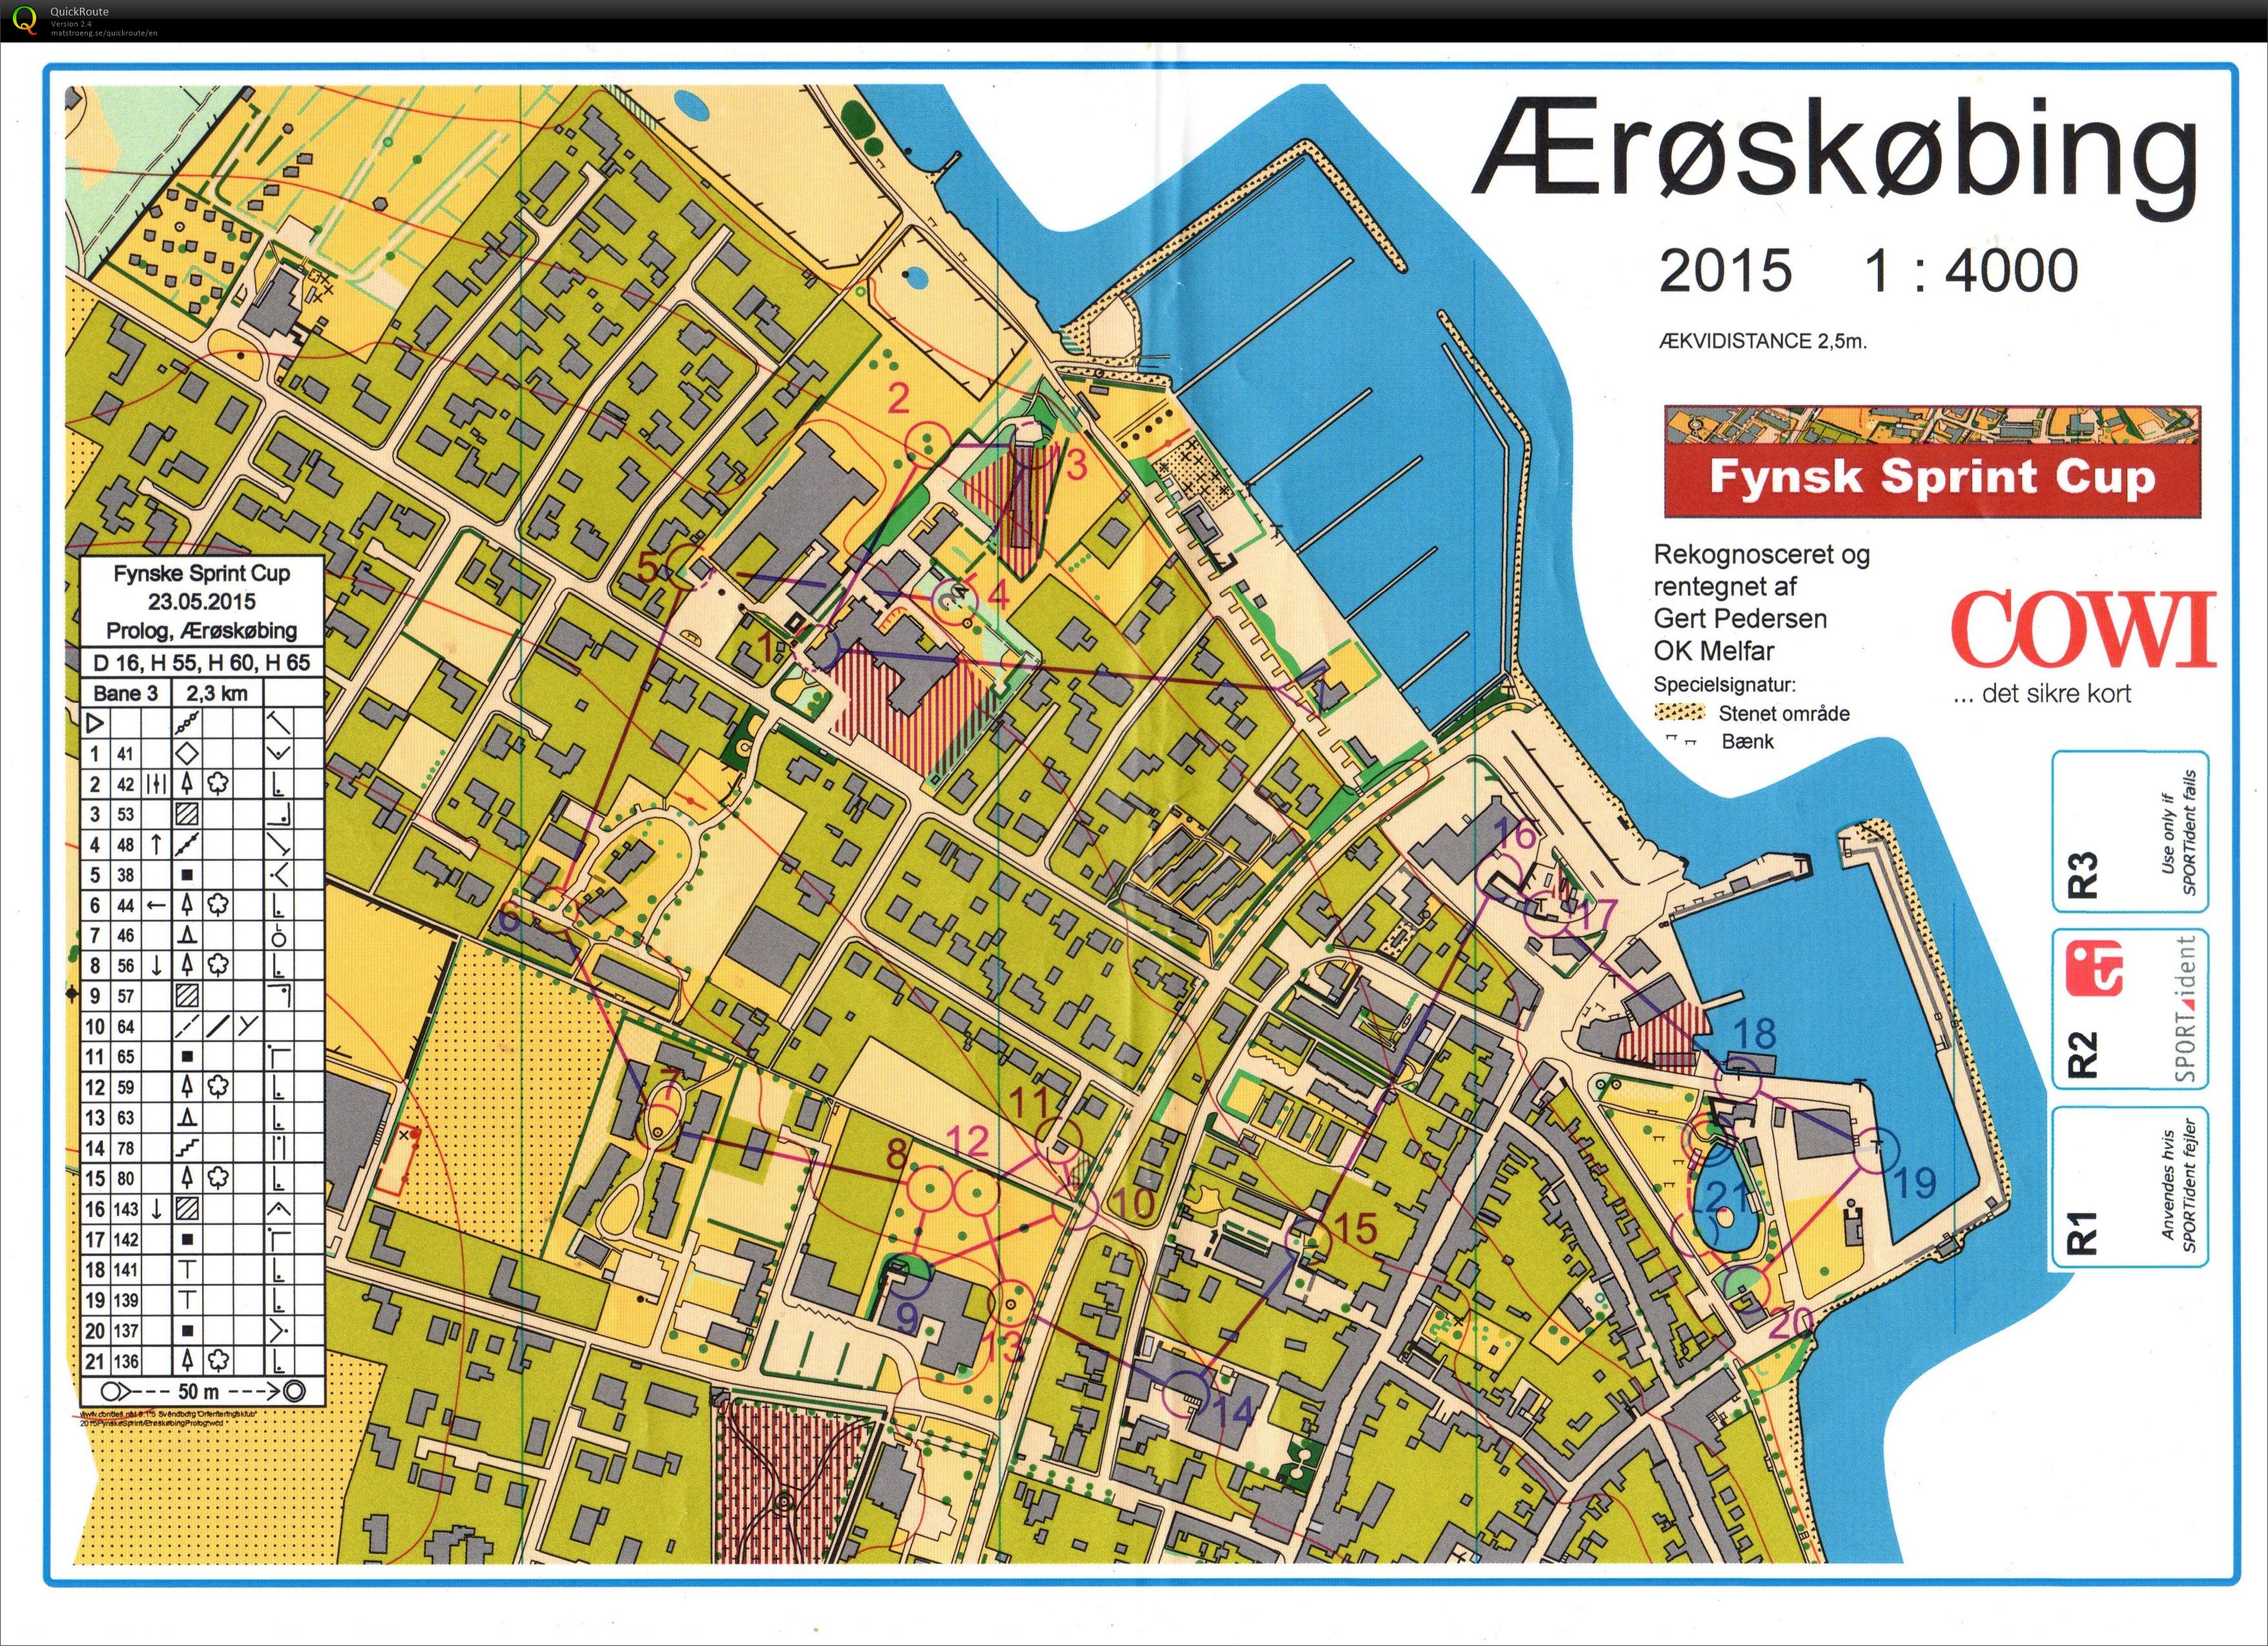 Fynsk Sprint Cup - prolog1 (23.05.2015)